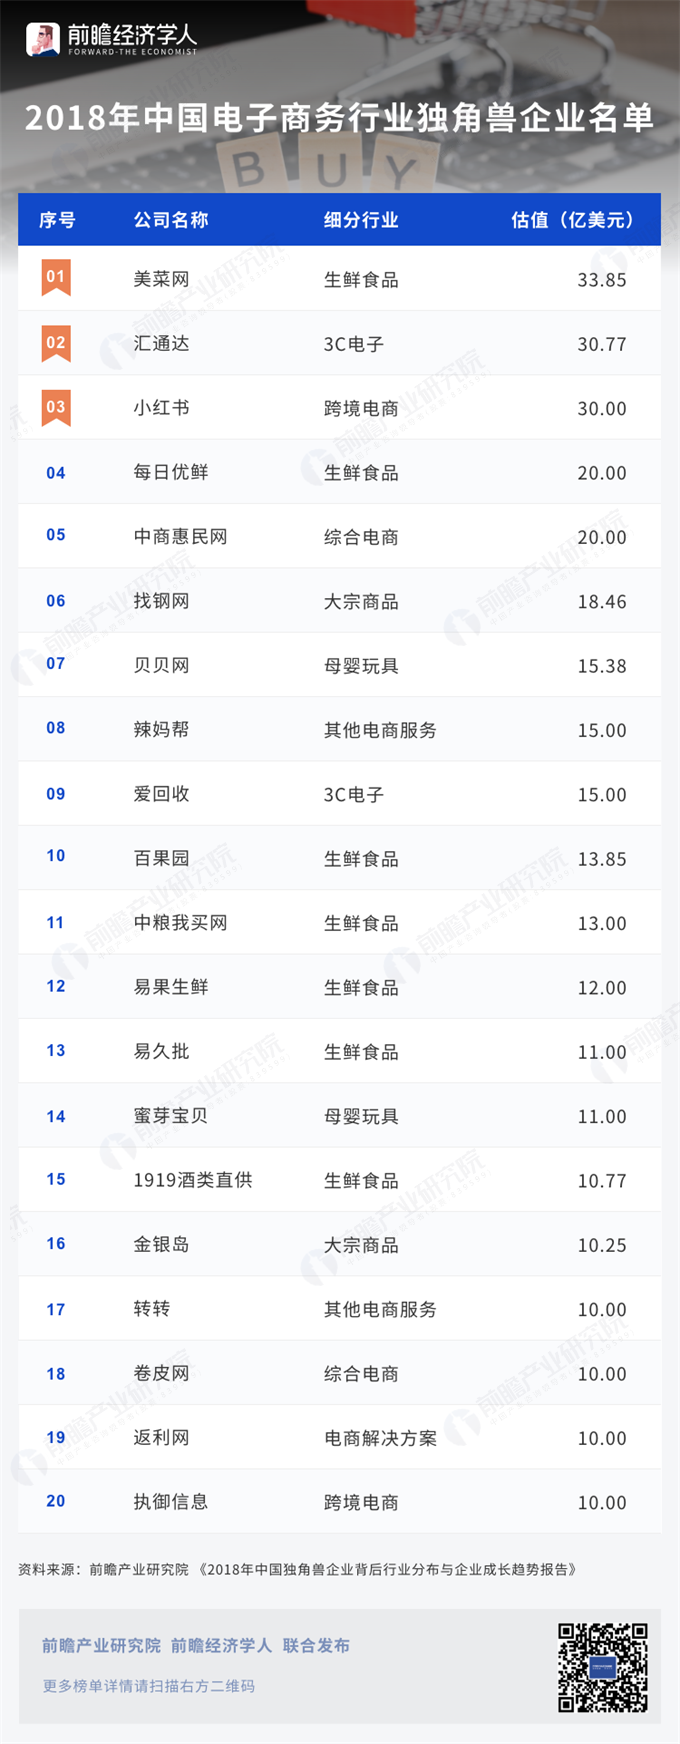 2018中国电子商务行业独角兽企业名单